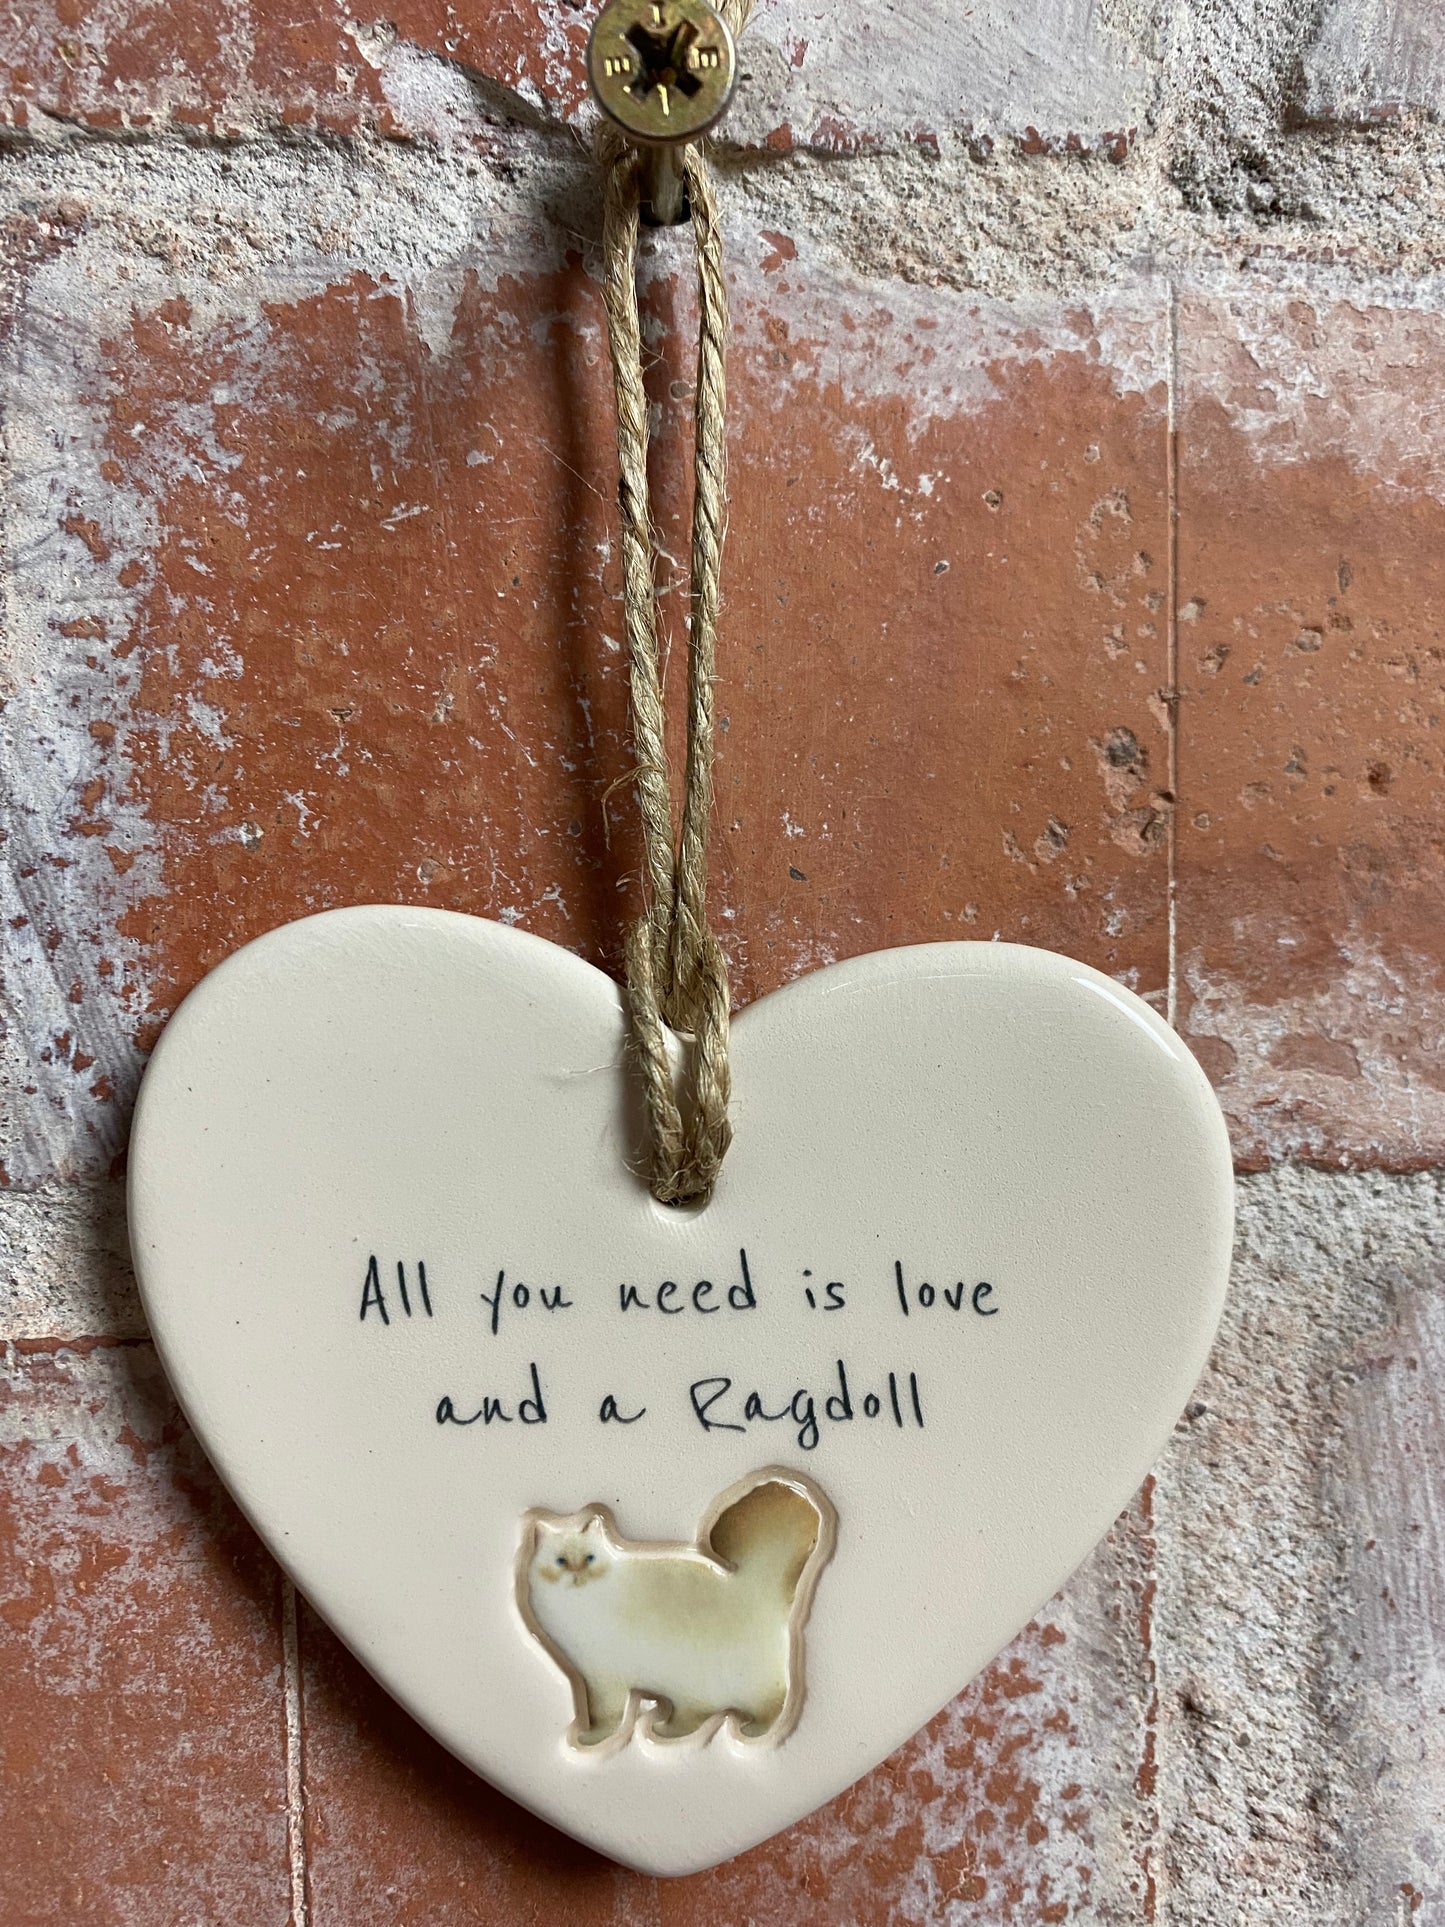 Ragdoll ceramic heart